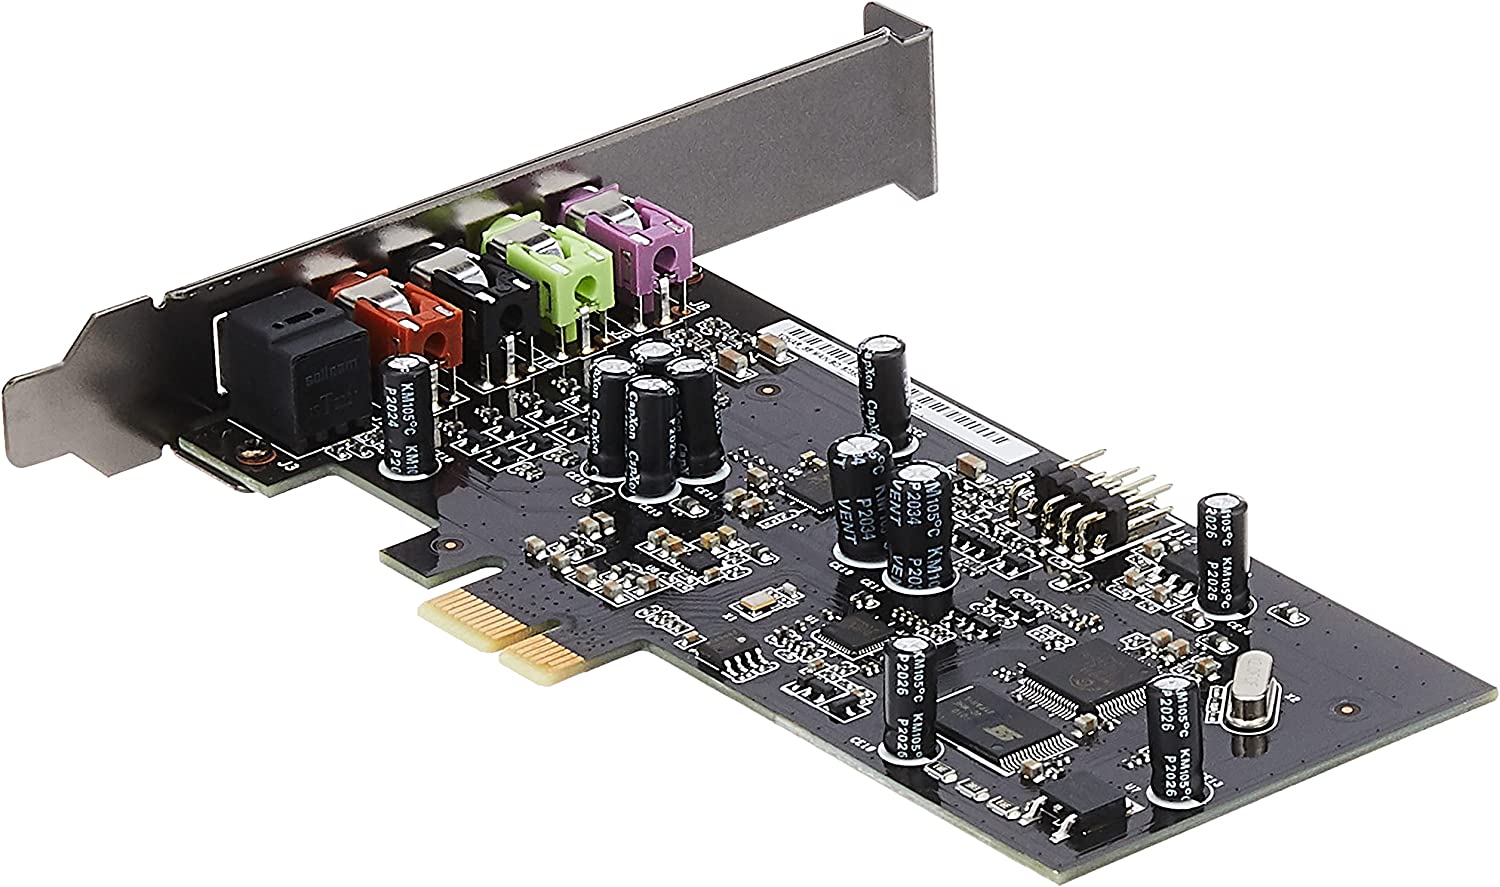 ASUS XONAR SE 5.1 CHANNEL 192 KHZ/24 BITS HI-RES 116 DB SNR PCIE GAMING CARD CON COMPATIBILIDAD CON WINDOWS 10